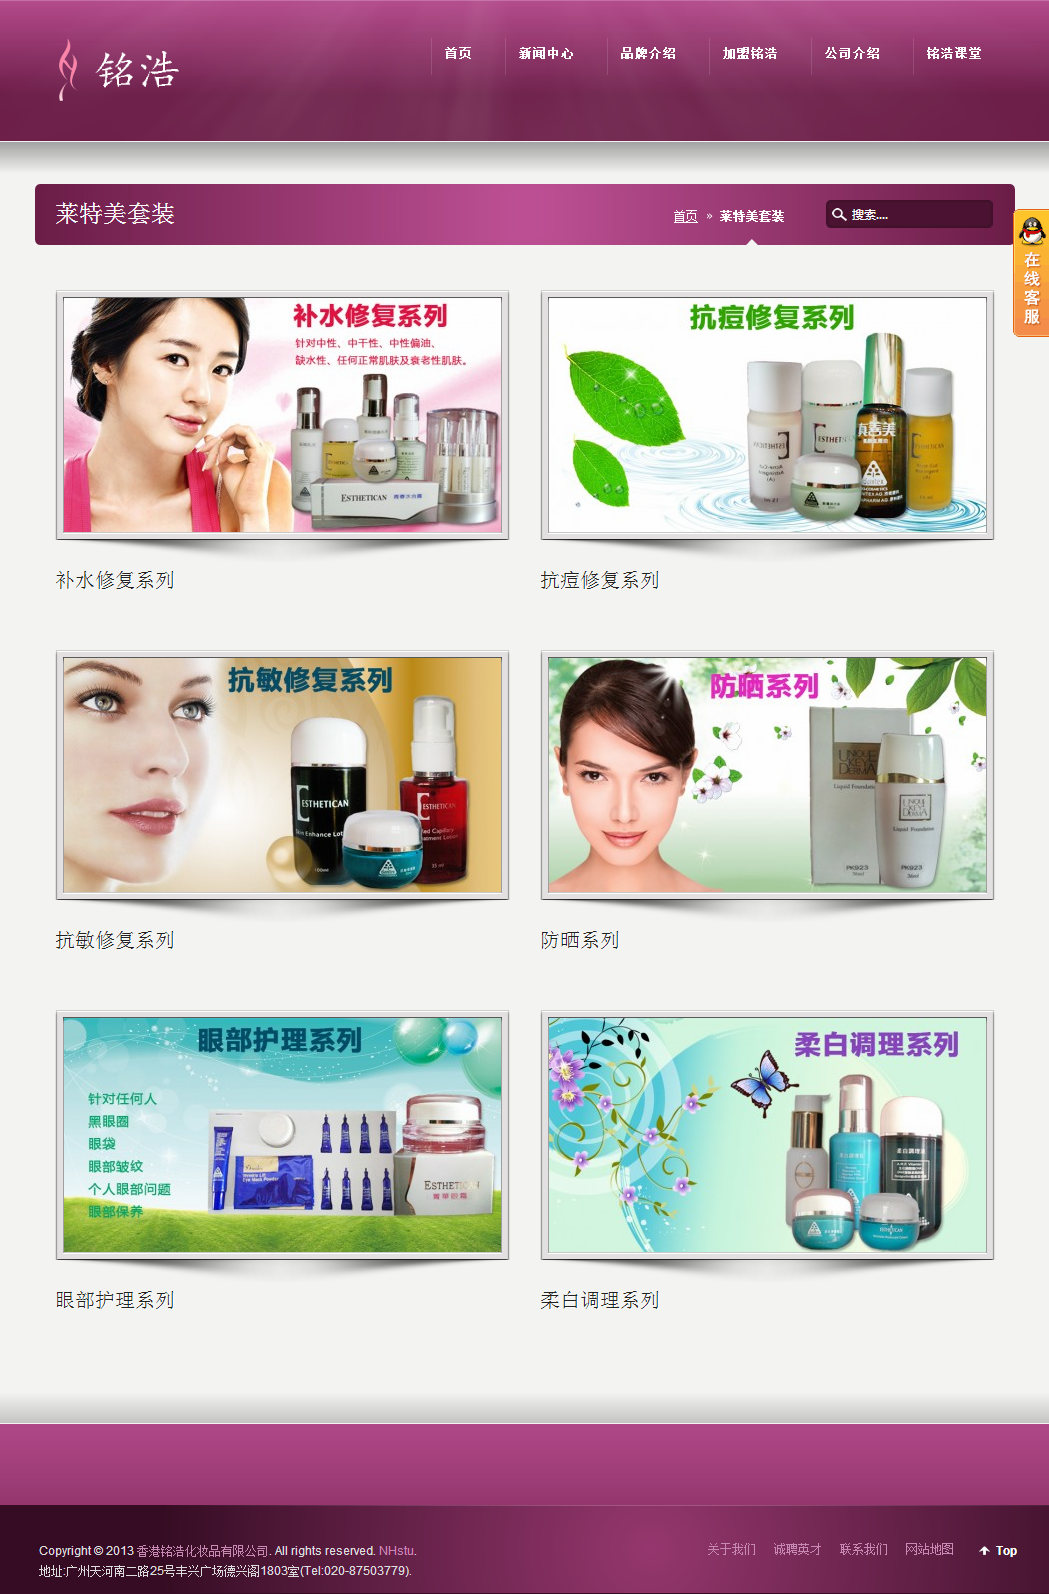 香港铭浩化妆品有限公司 品牌网站建设